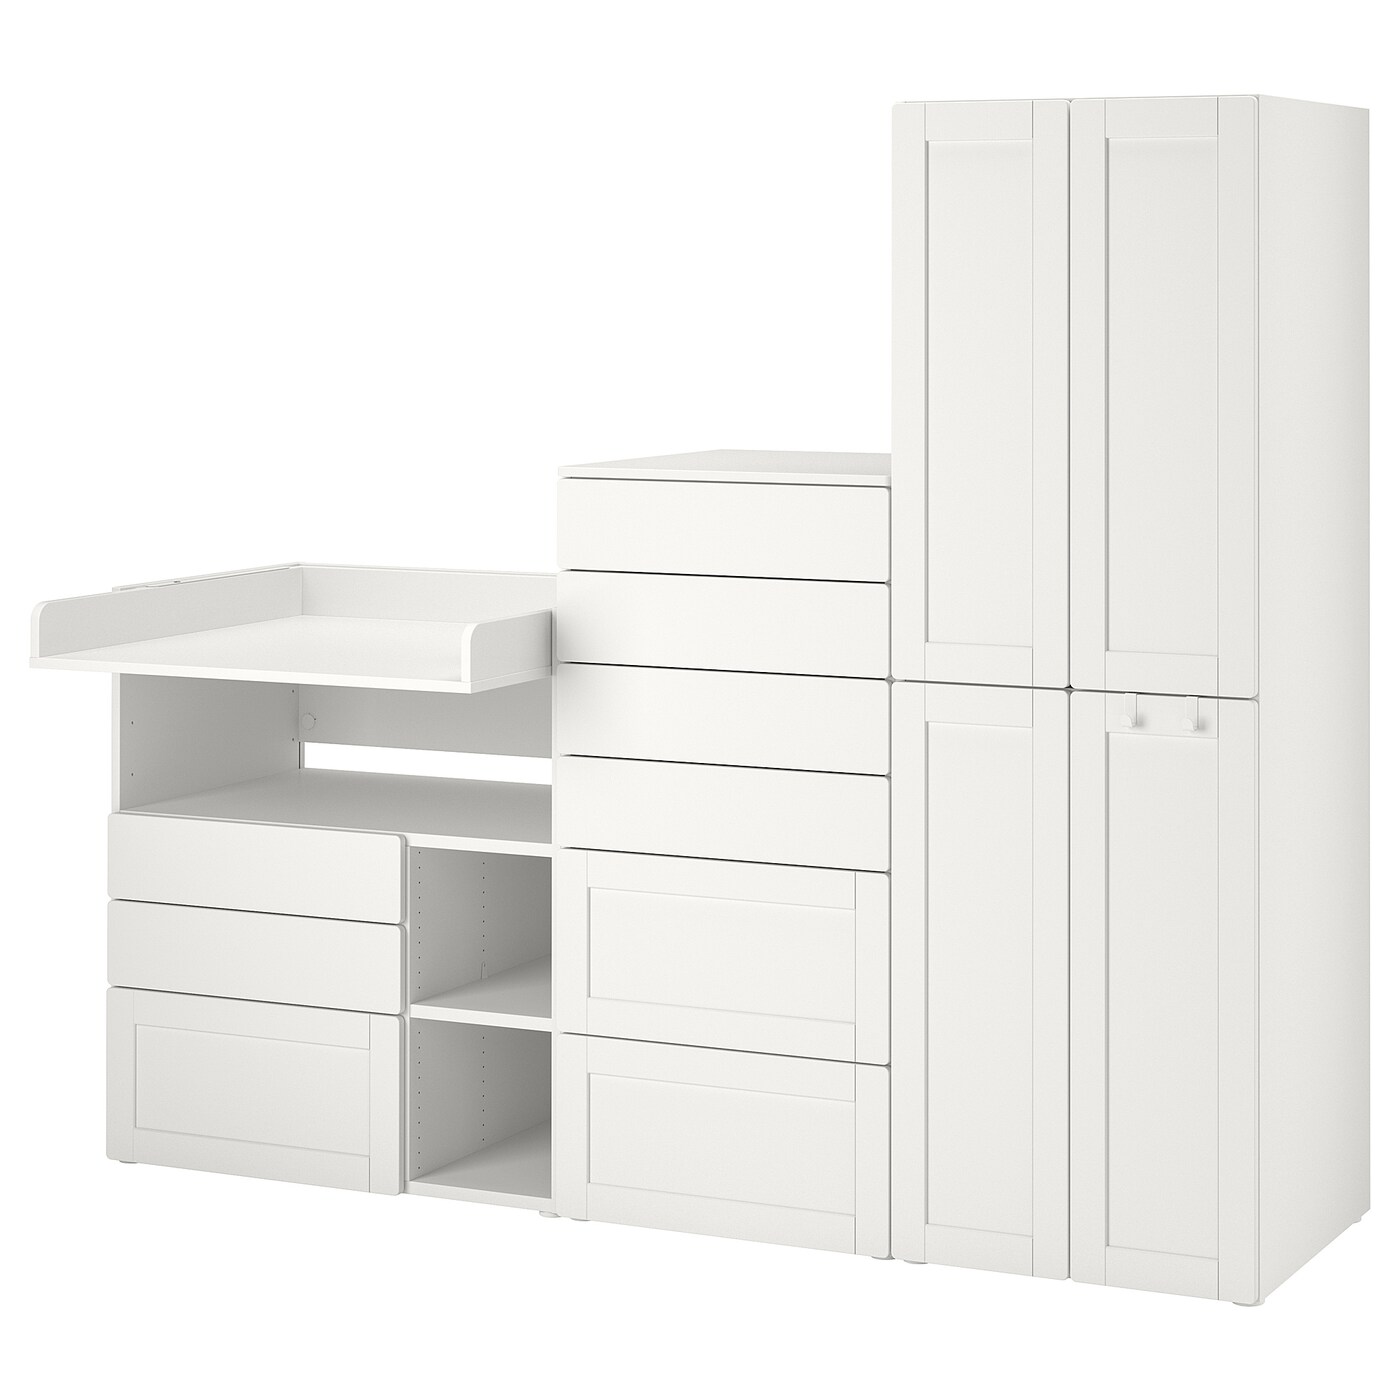 Детская гардеробная комбинация - IKEA PLATSA SMÅSTAD/SMASTAD, 181x79x210см, белый, ПЛАТСА СМОСТАД ИКЕА